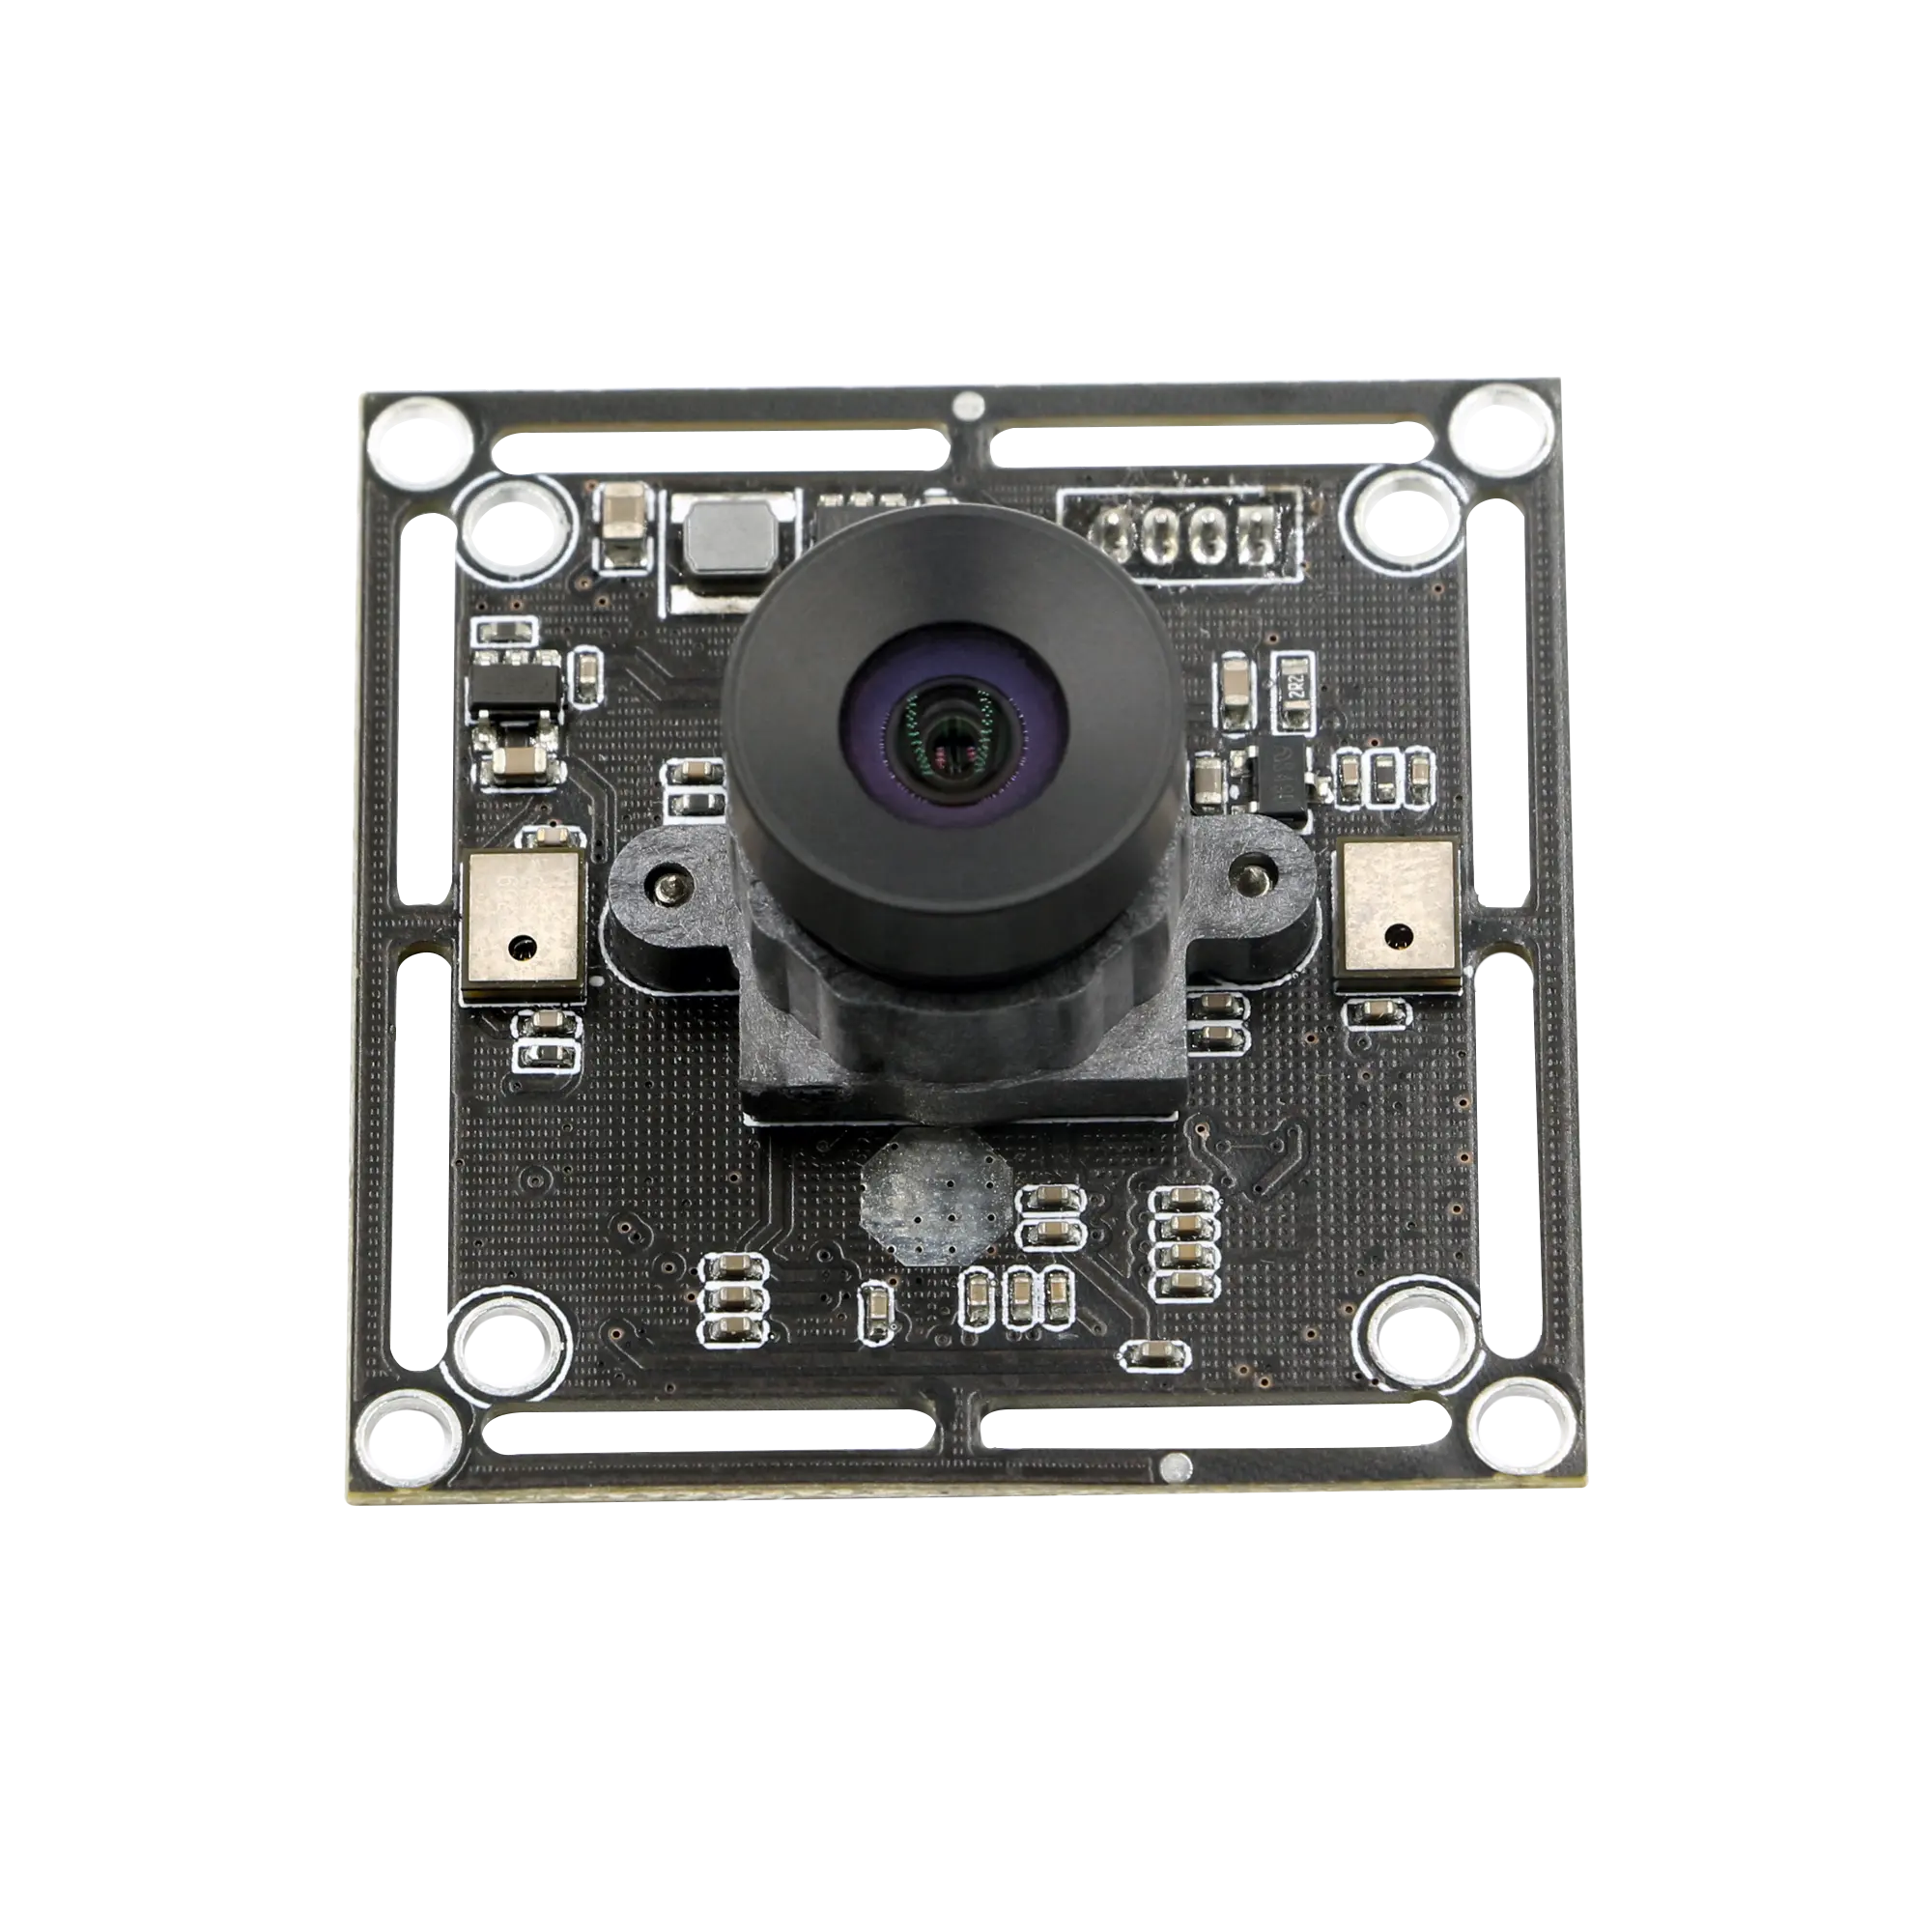 OEM IMX323 Cmos sensore WDR Starlight visione notturna 2mp USB2.0 grandangolare modulo fotocamera 1080p